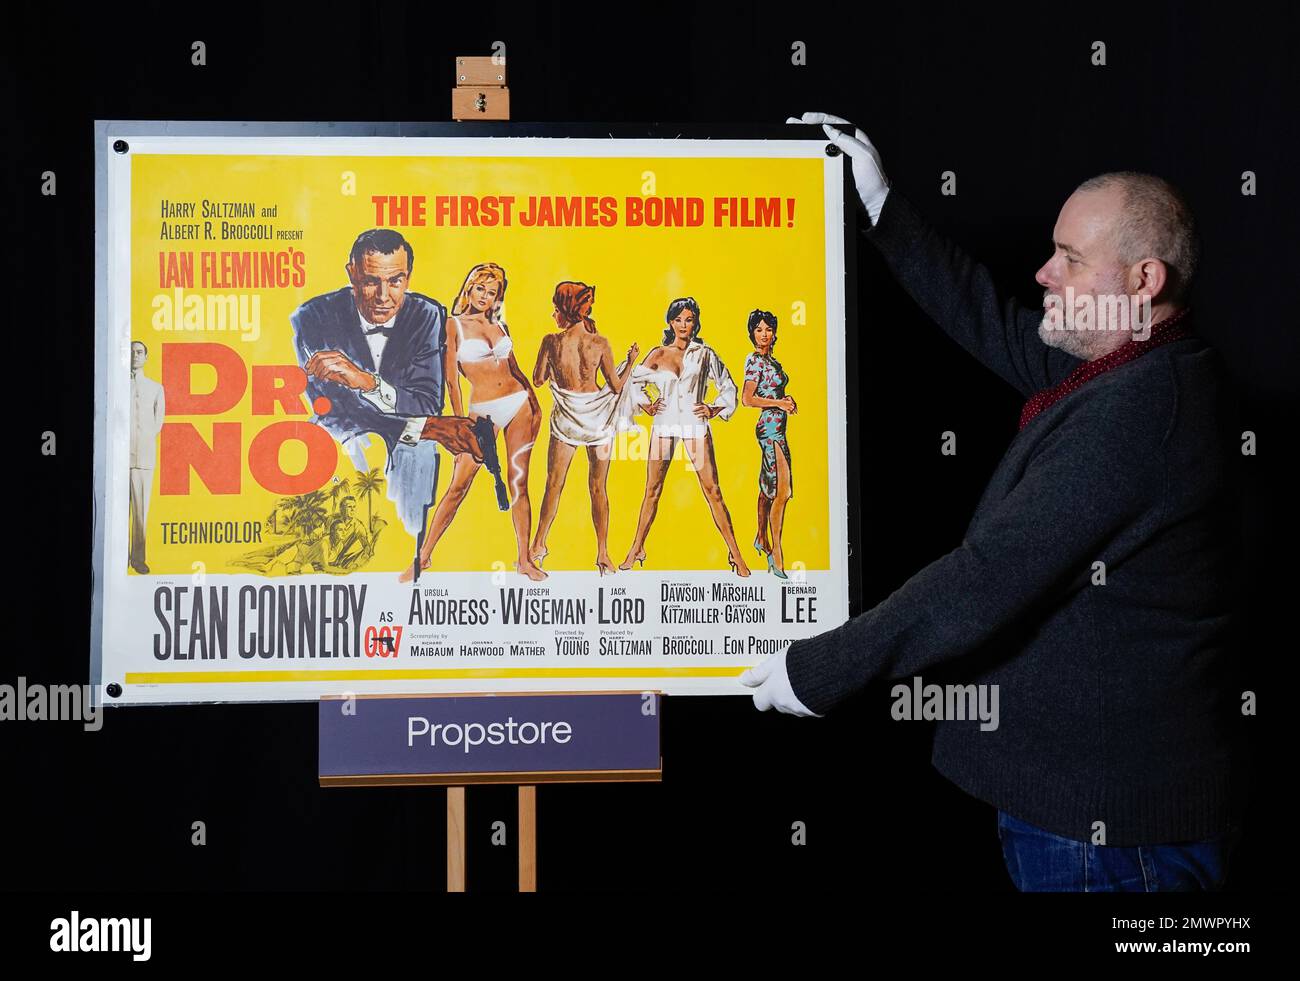 Mark Hochman, consulente del poster di Propstore, ha adattato un quadrimoter britannico per il film di James Bond del 1962 "Dr No" (stima £10.000 - £ 20.000) durante un'anteprima per l'asta dei cimeli dello showbiz, presso il Propstore di Rickmansworth, Hertfordshire. Data immagine: Giovedì 19 gennaio 2023. Foto Stock